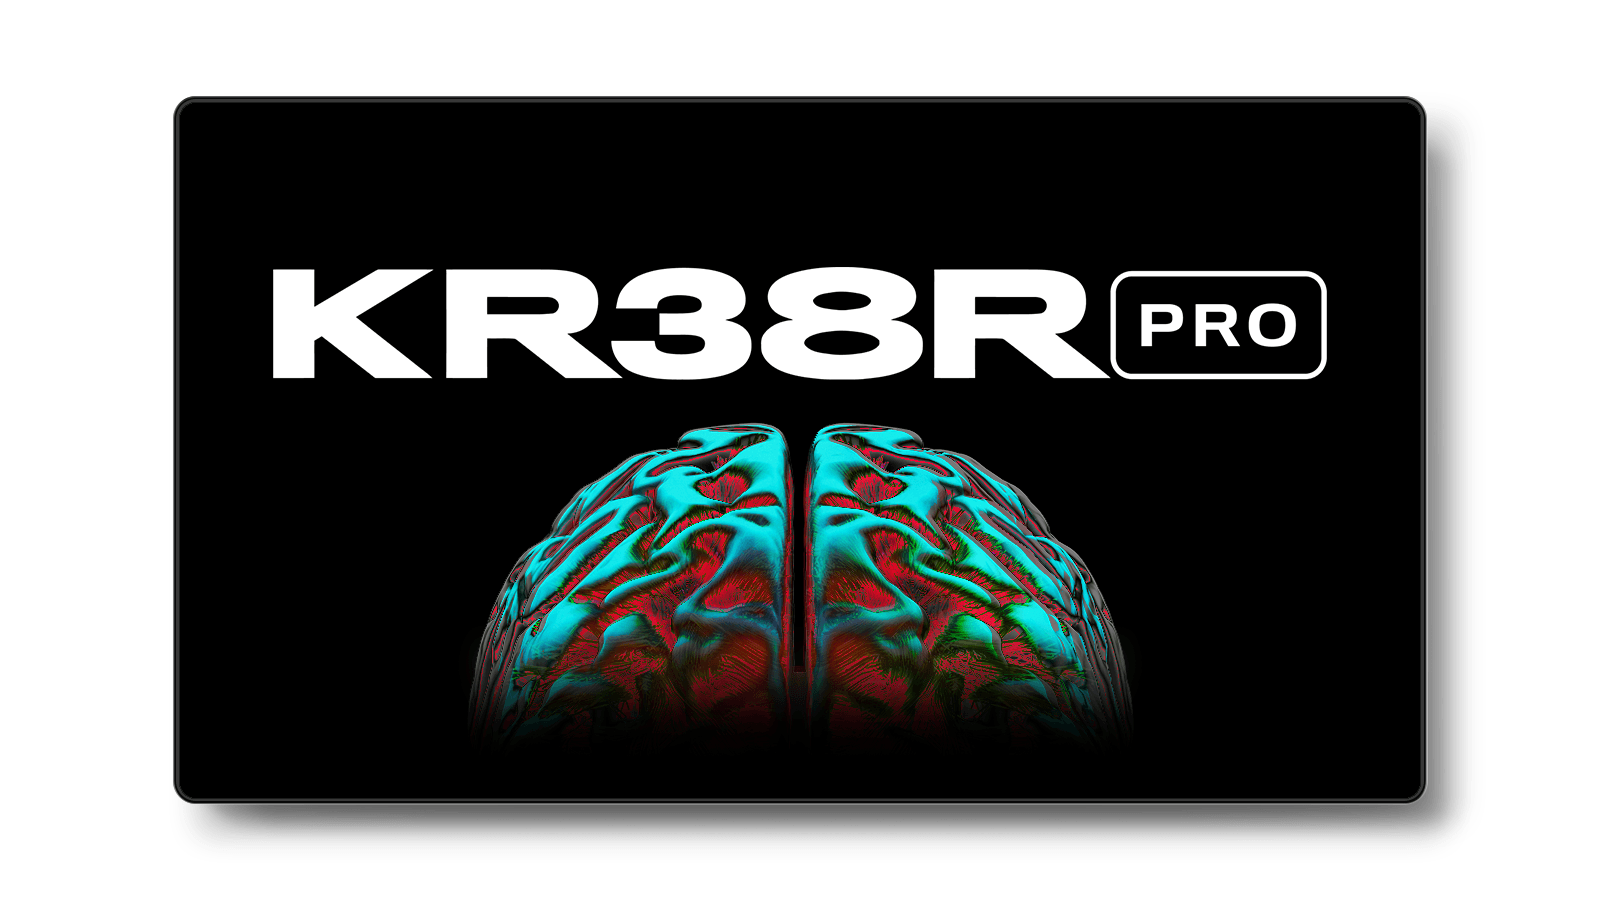 KR38R PRO